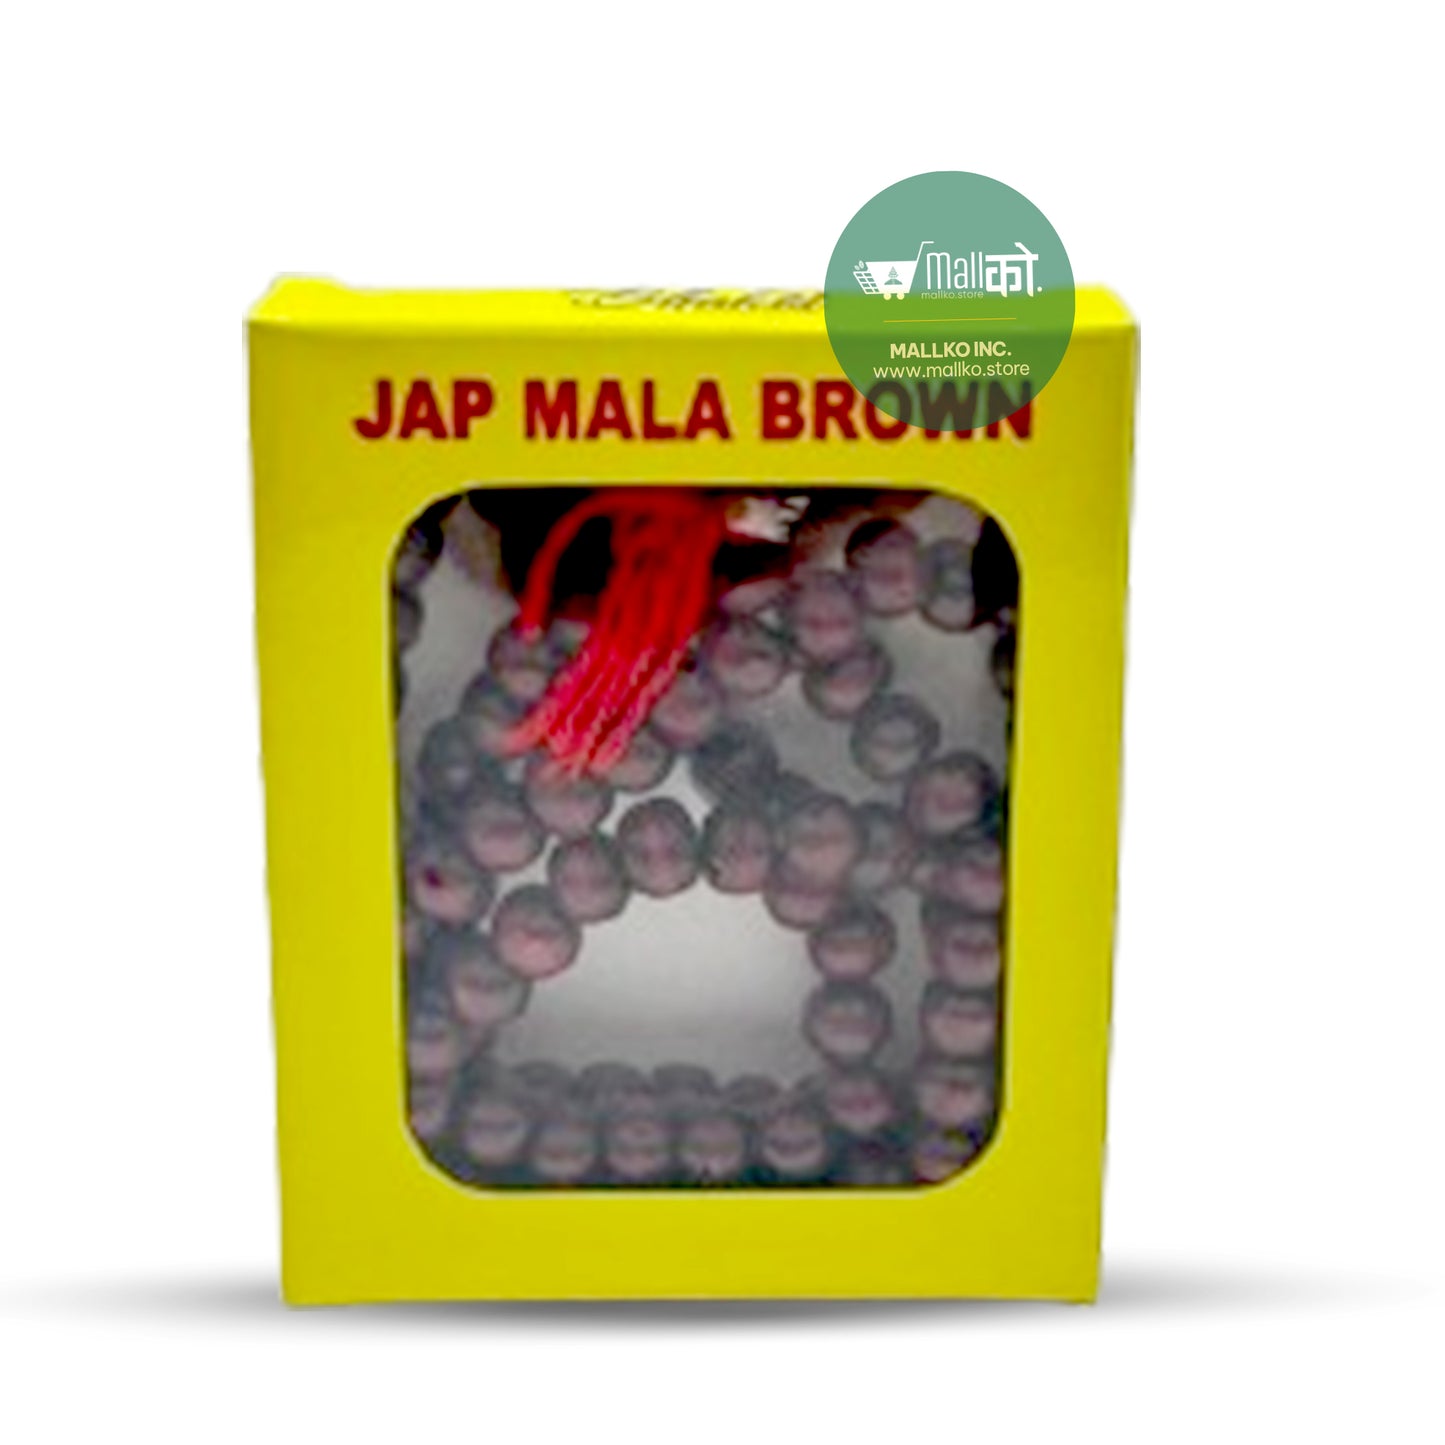 Jap Mala Brown